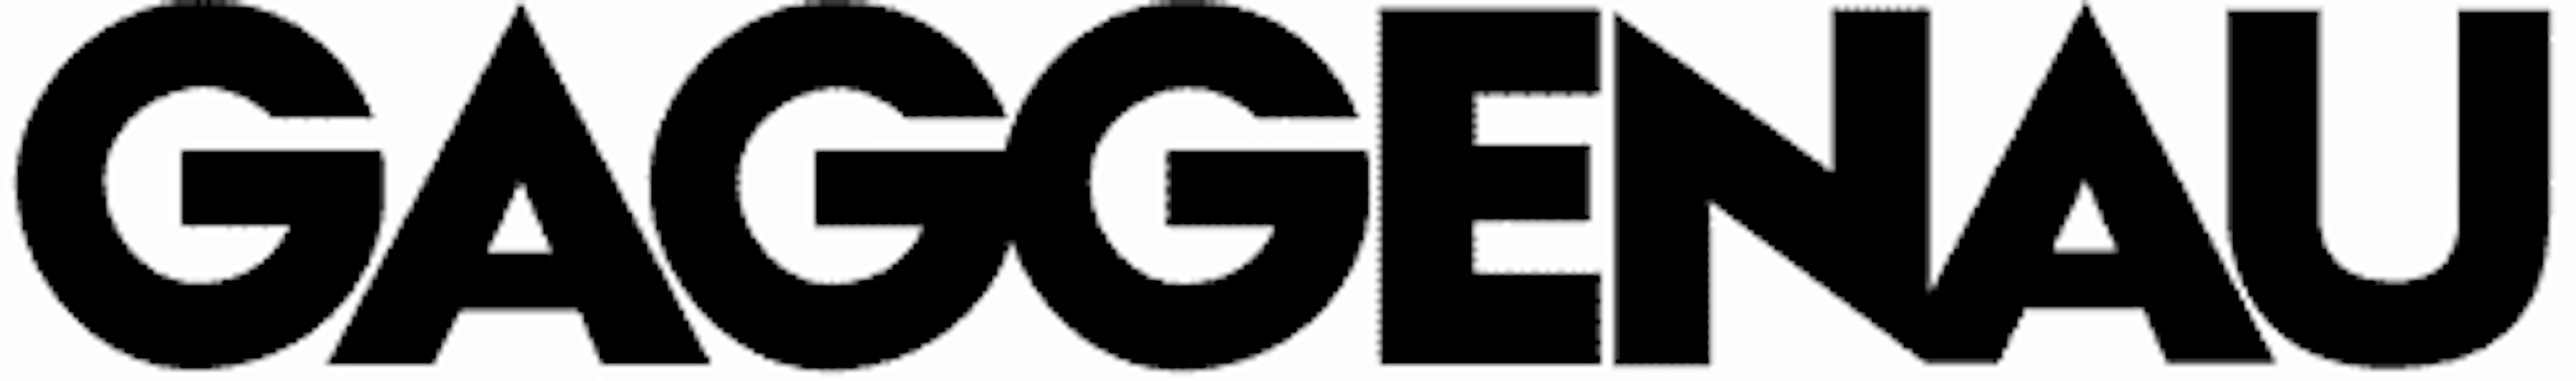 Gaggenau logo